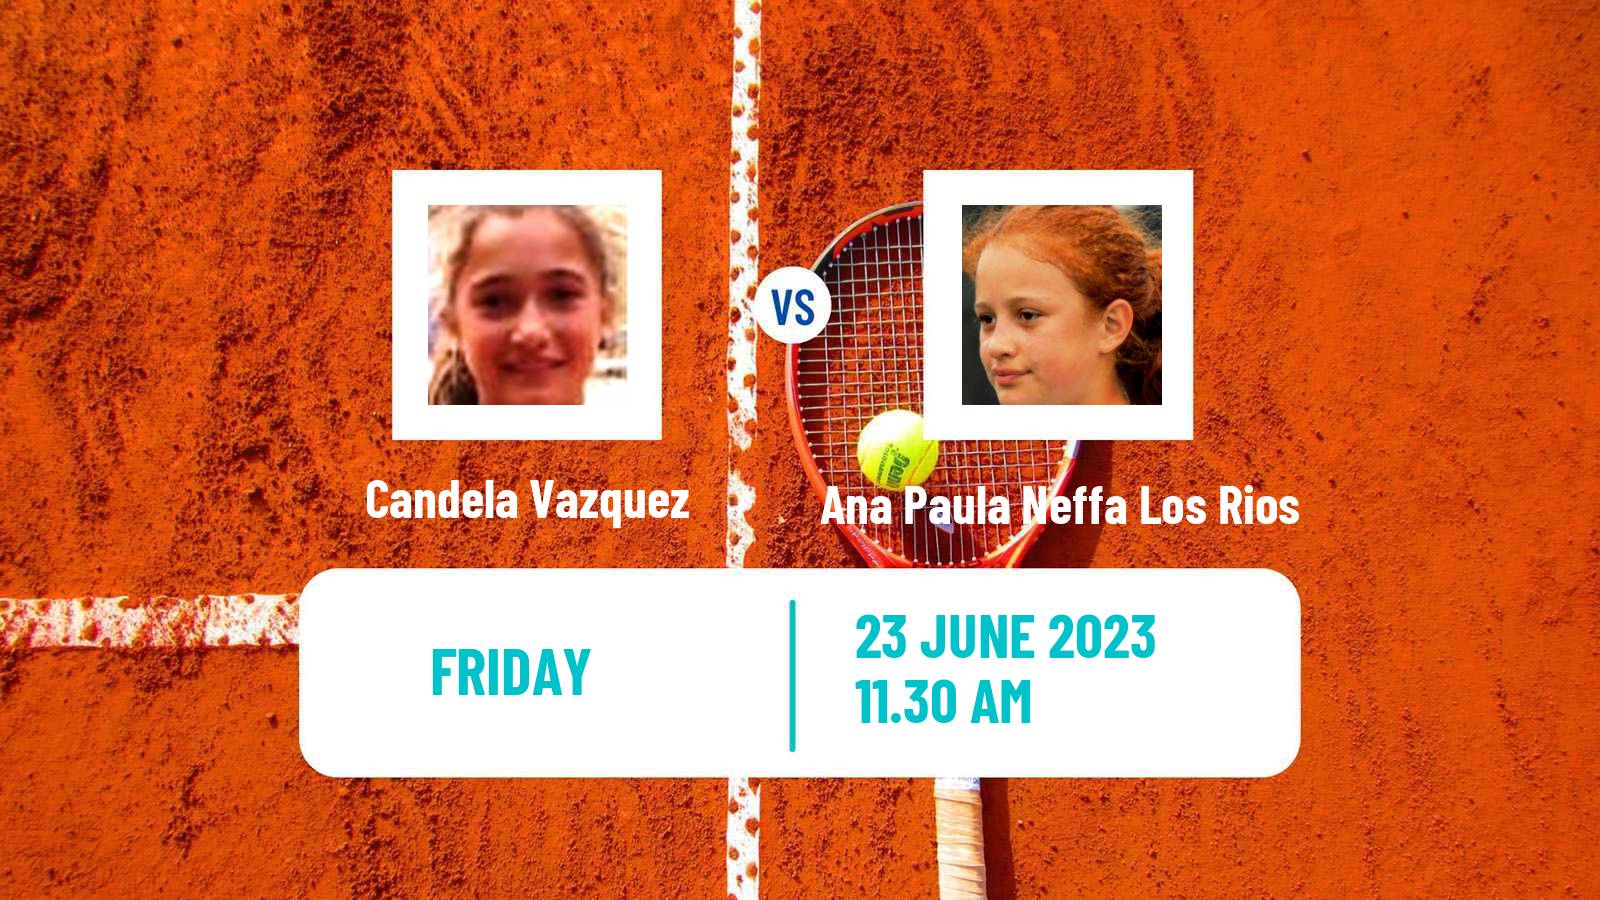 Tennis ITF W15 Buenos Aires Women Candela Vazquez - Ana Paula Neffa Los Rios